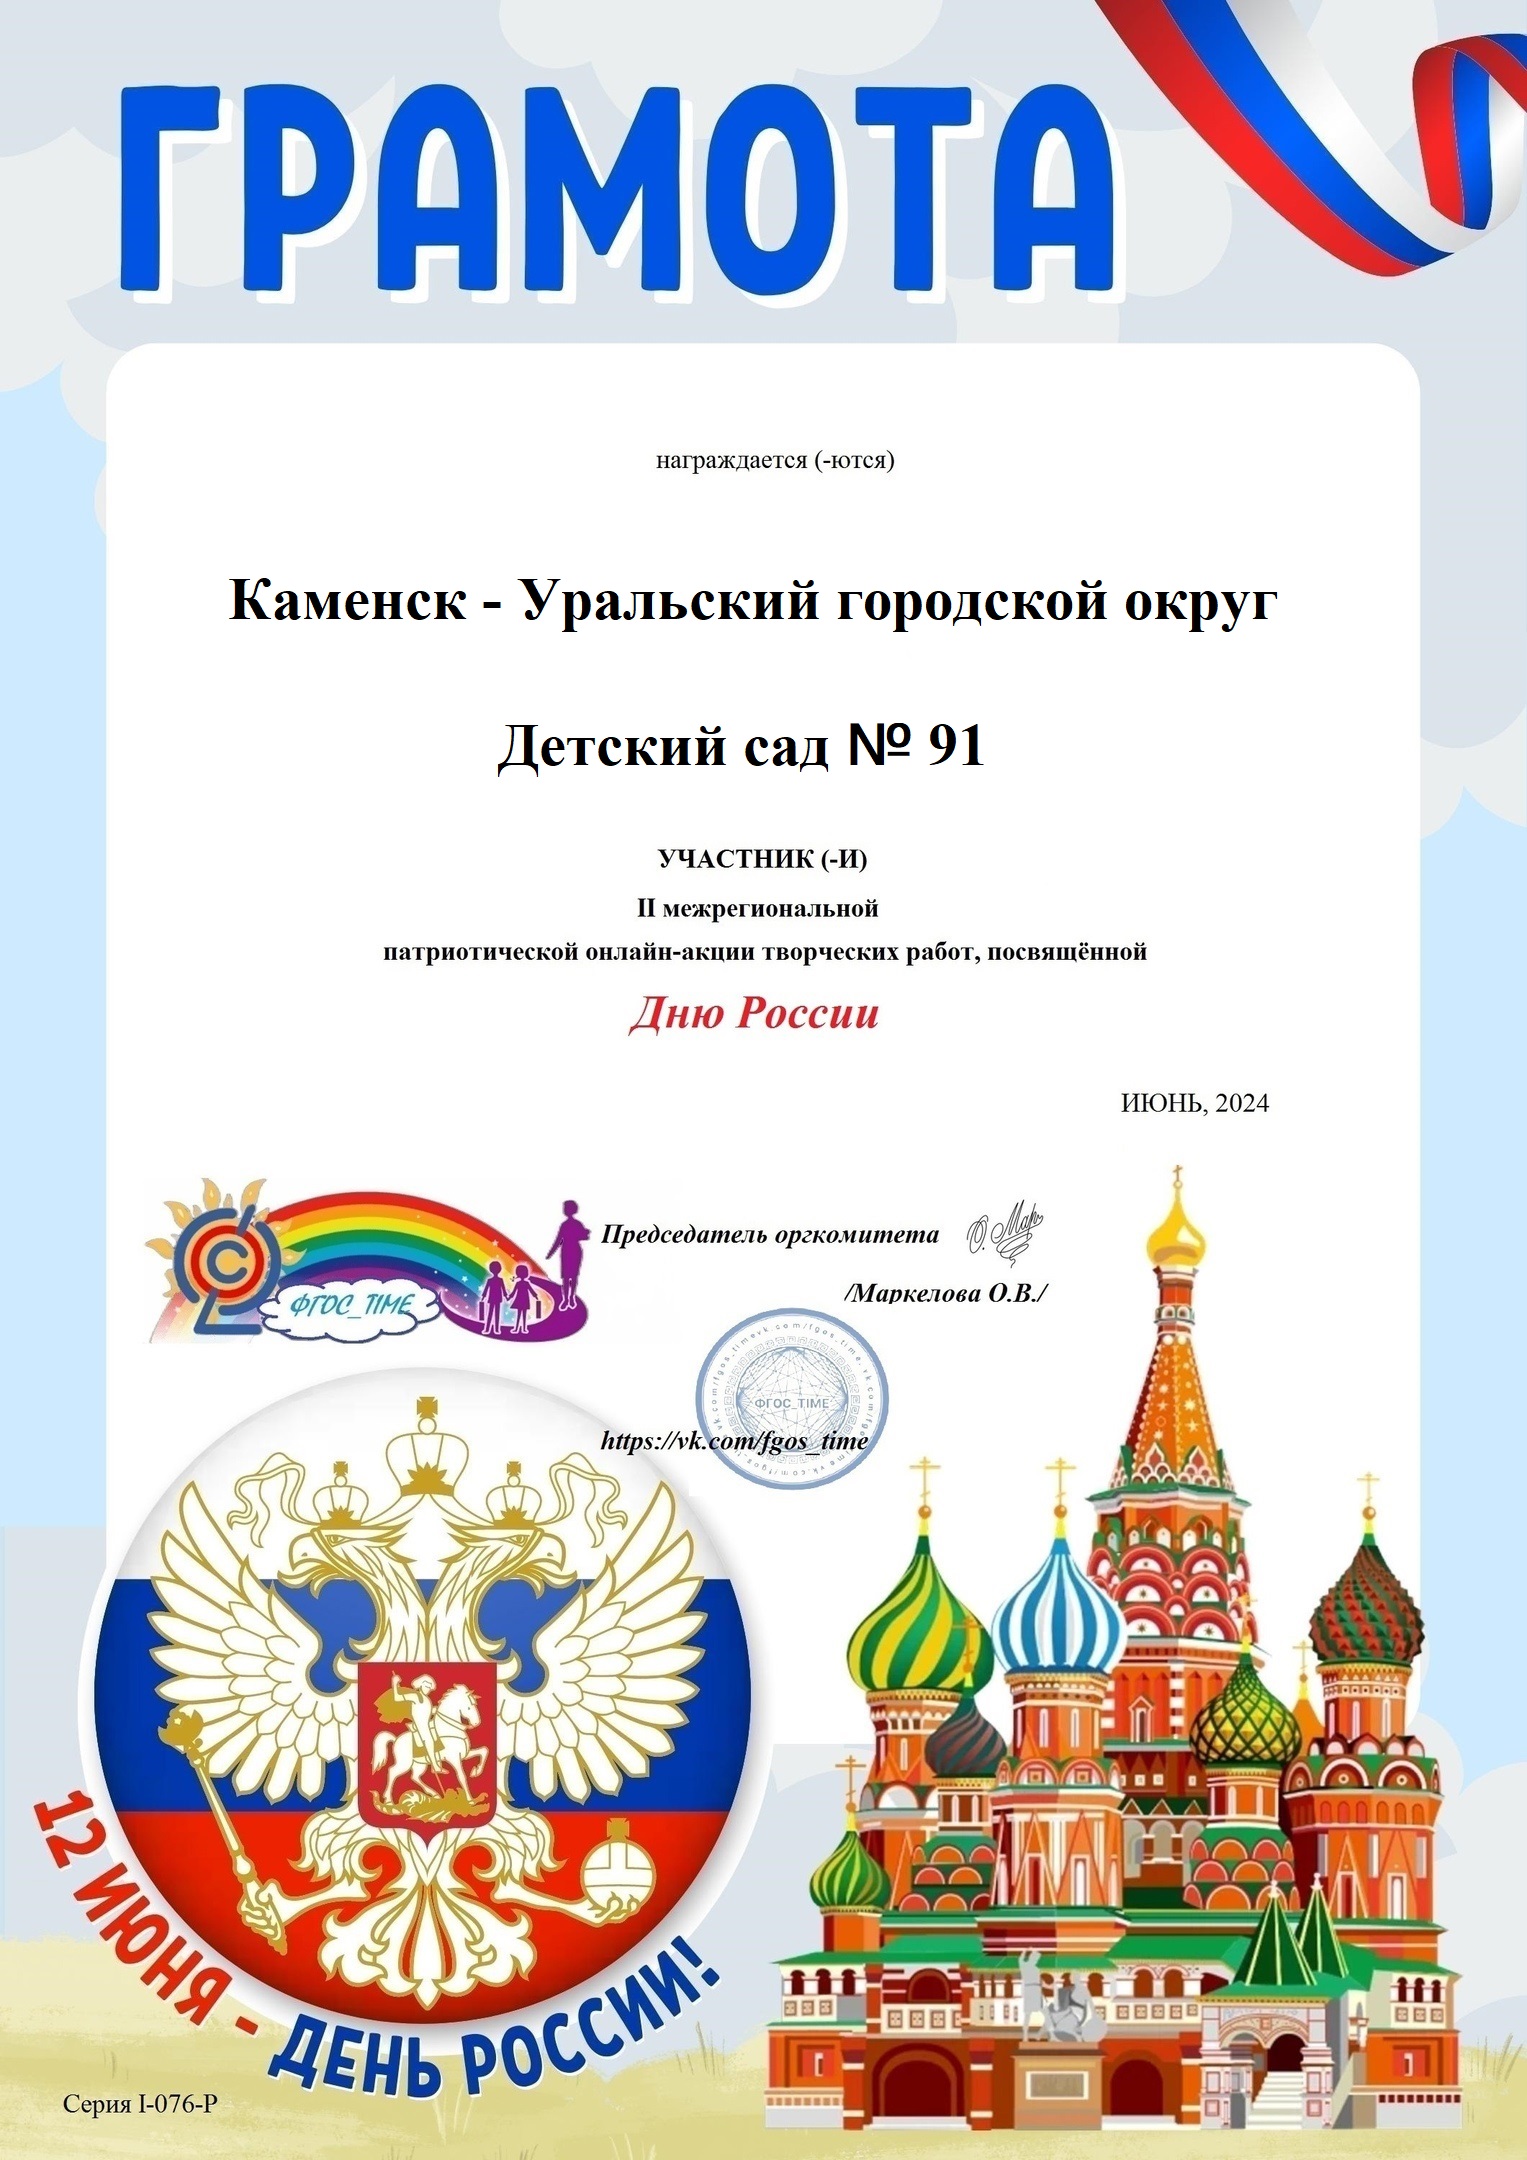 Моя Россия